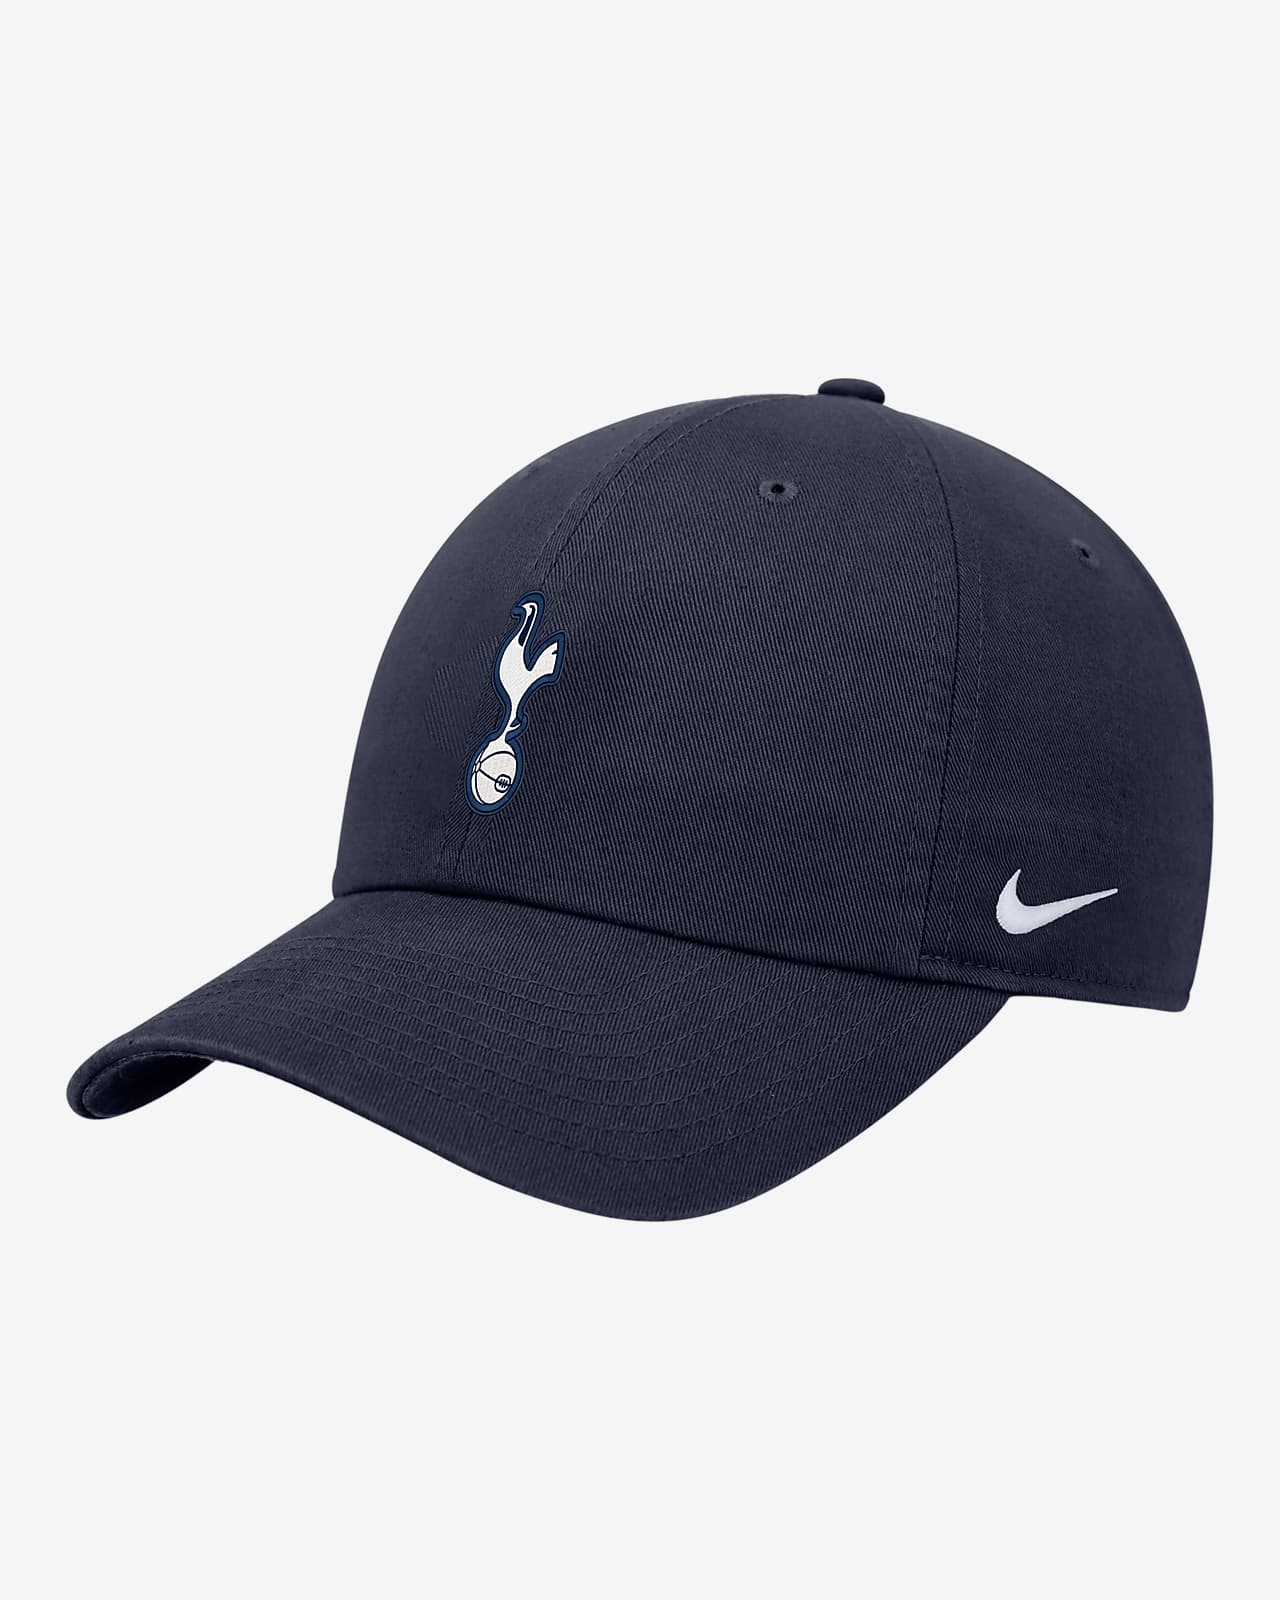 Tottenham Hotspur Club Nike Soccer Cap